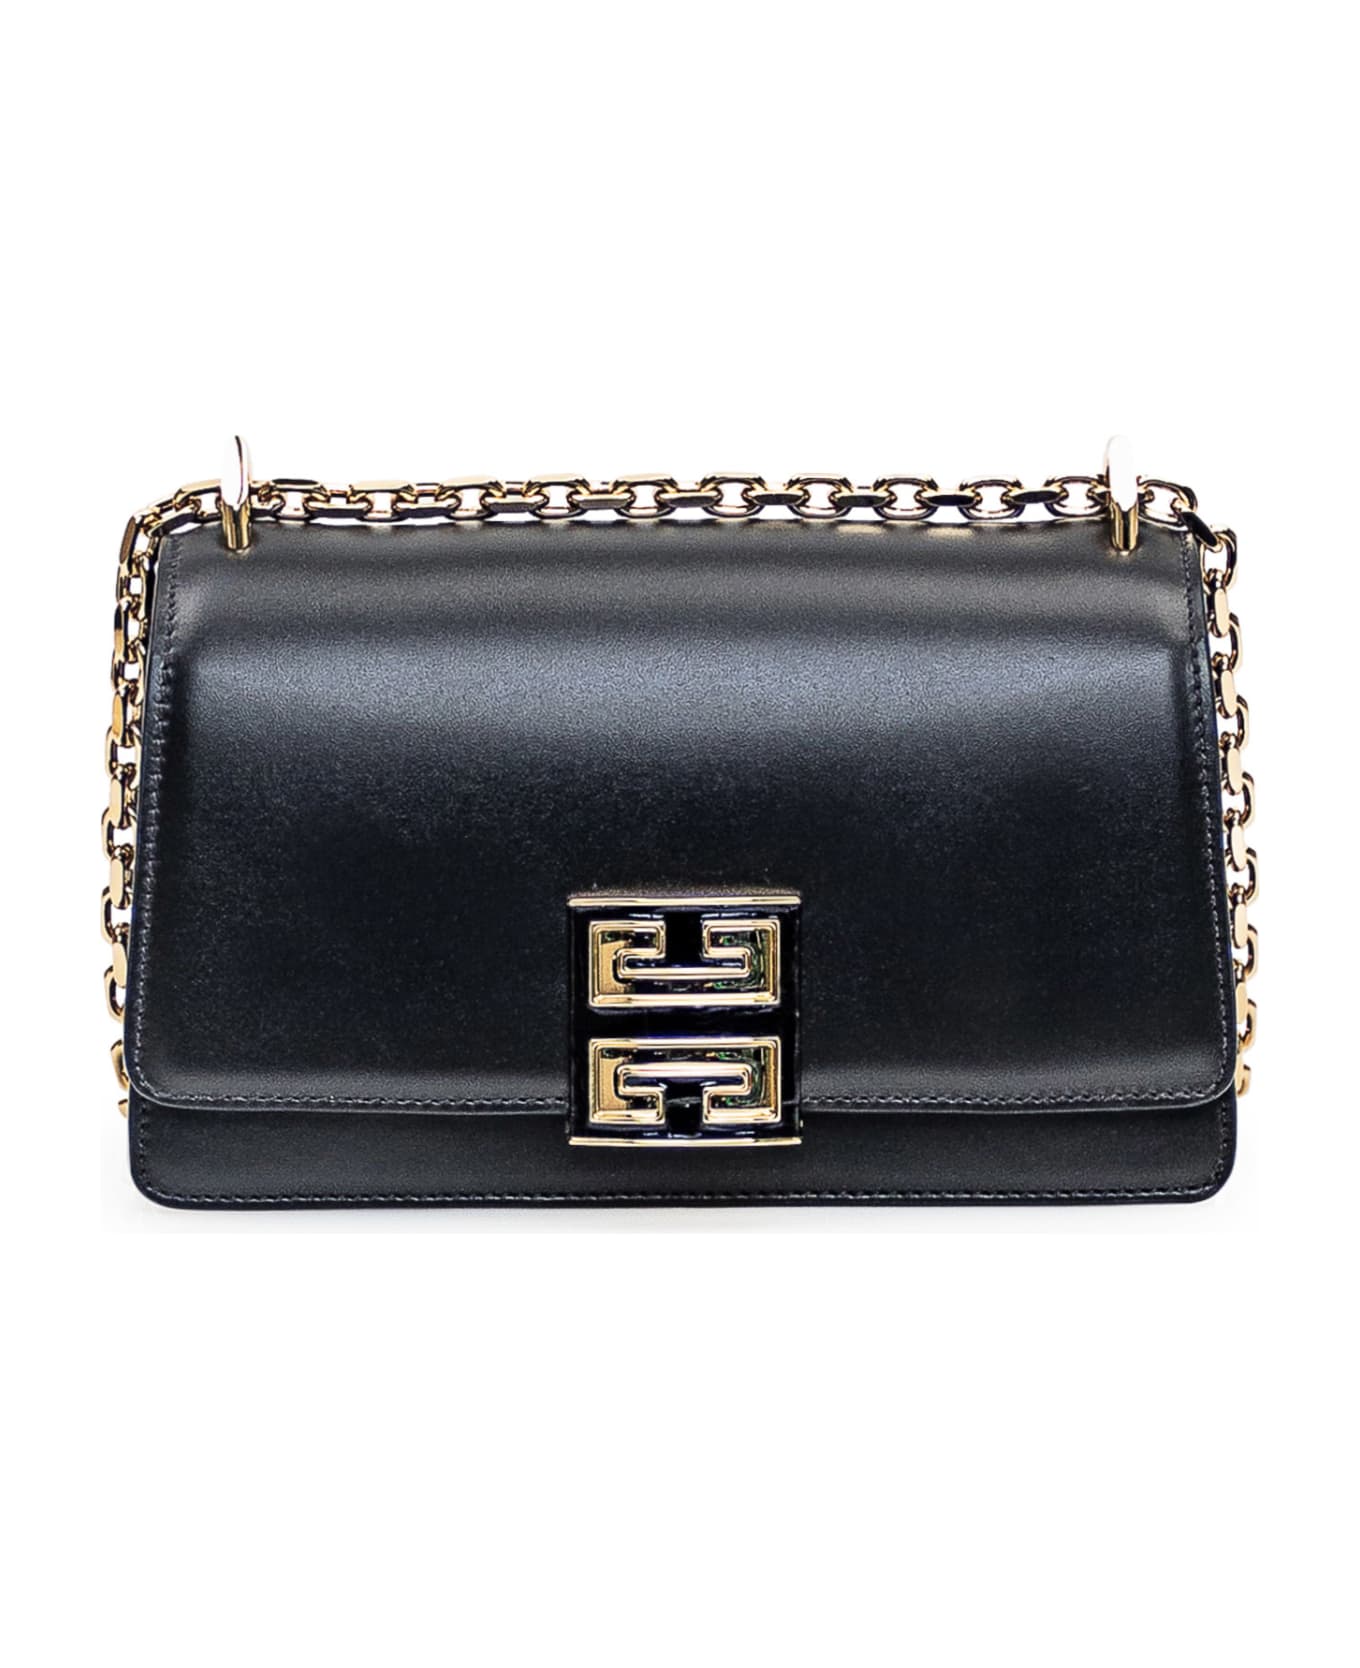 Givenchy Chain 4g Bag - Black ショルダーバッグ